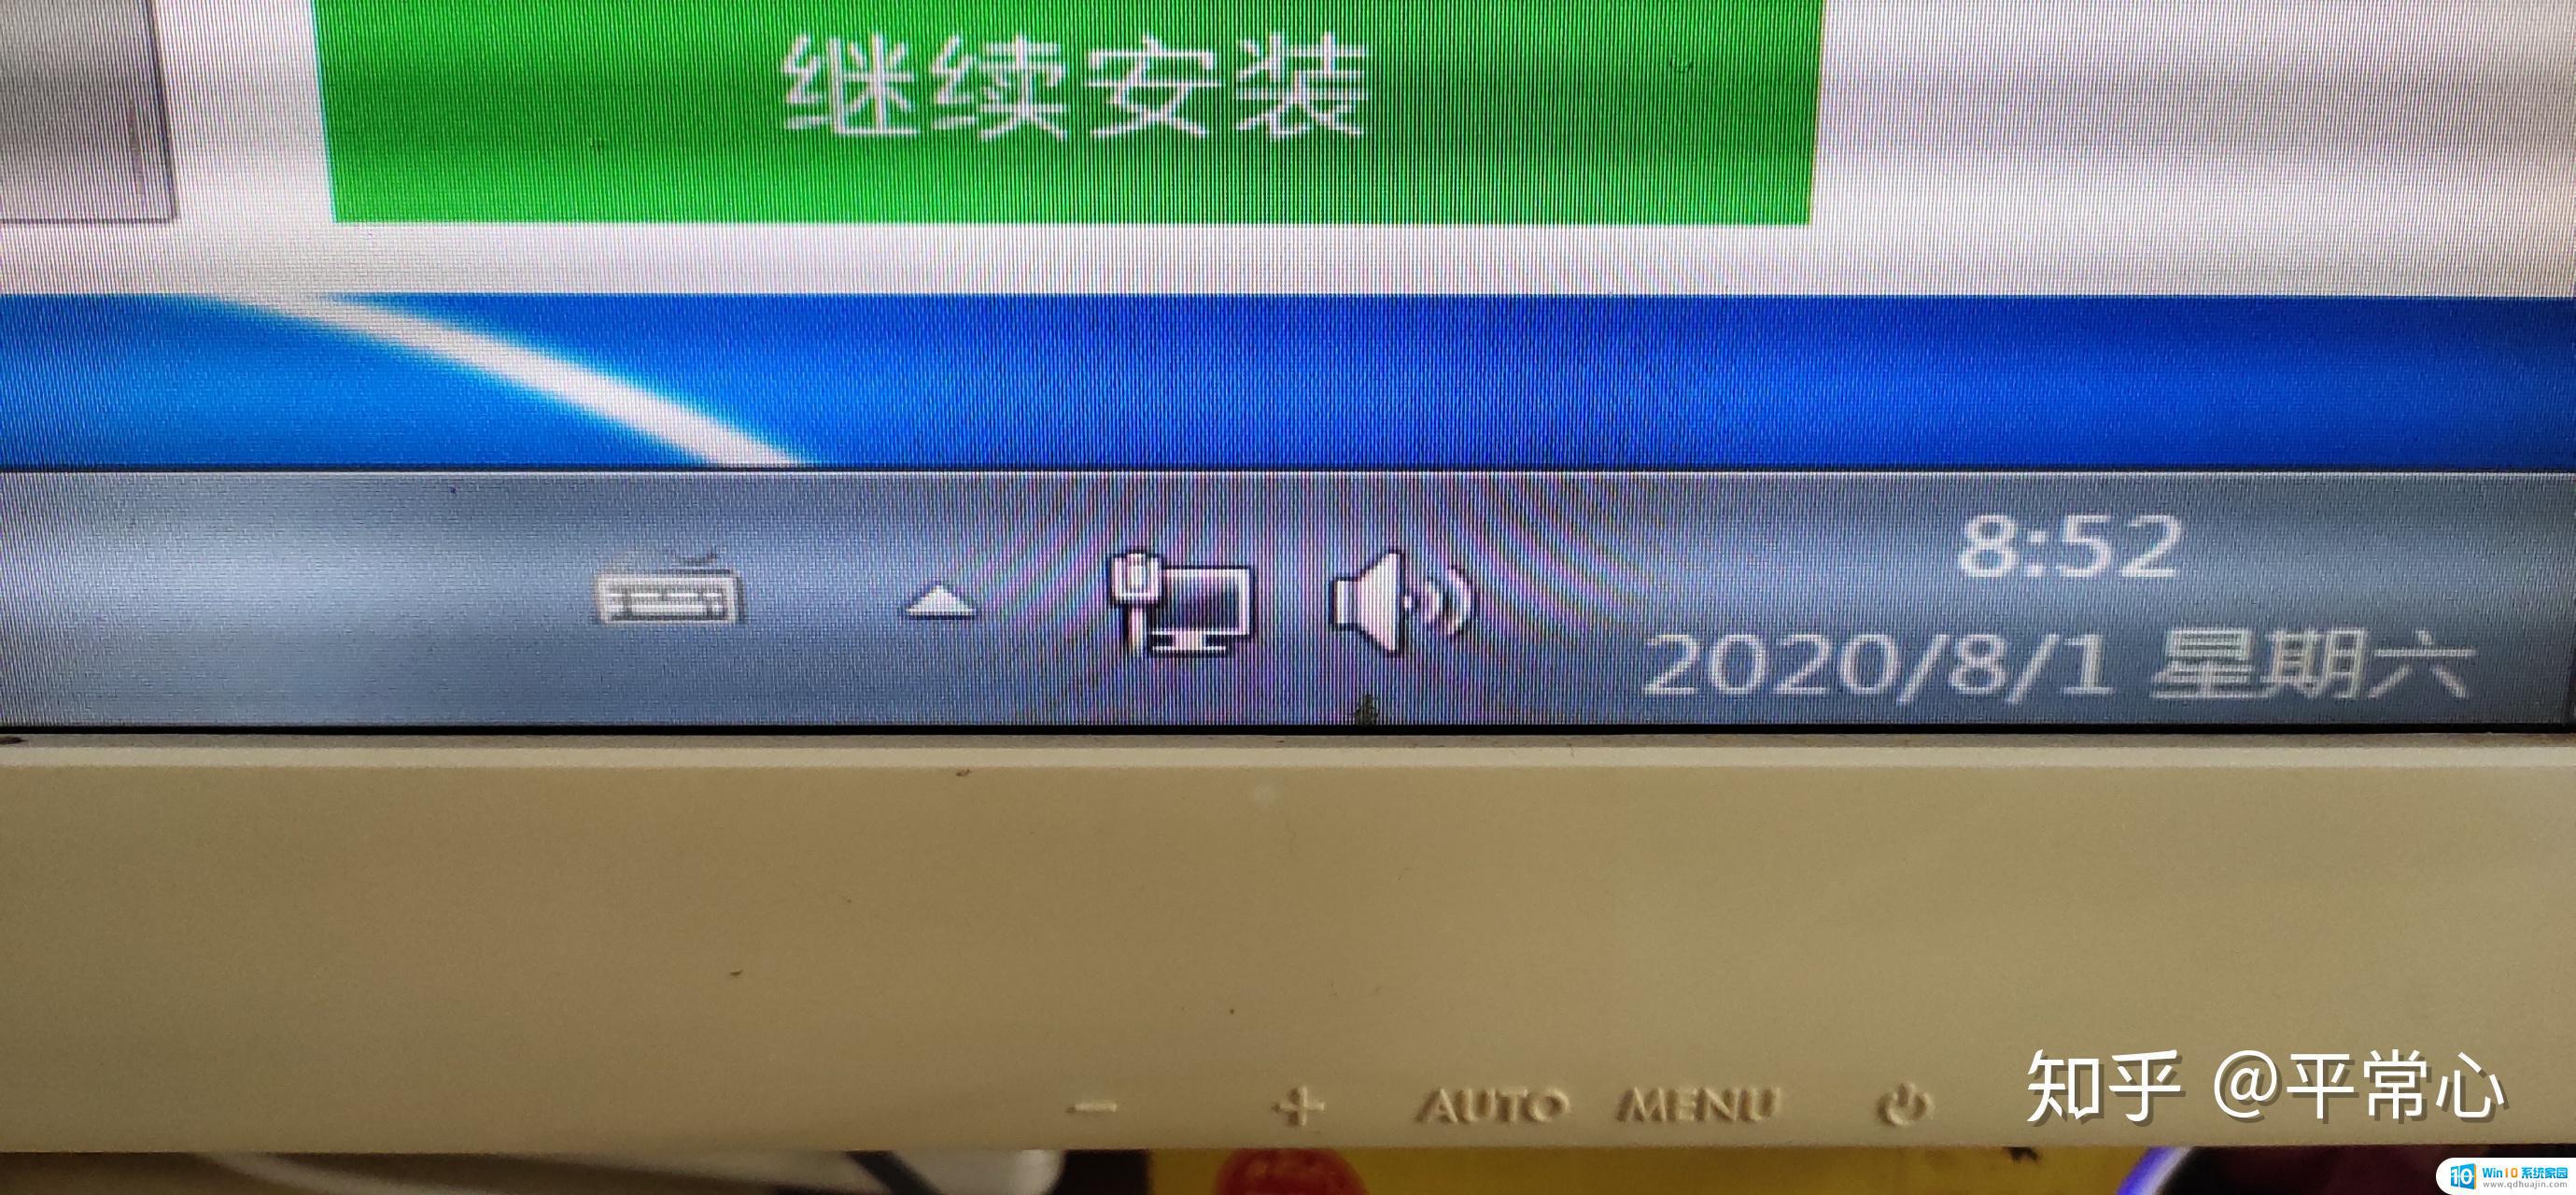 宽屏显示器两边有黑边 如何调整电脑显示器的宽高比，去除两侧黑边